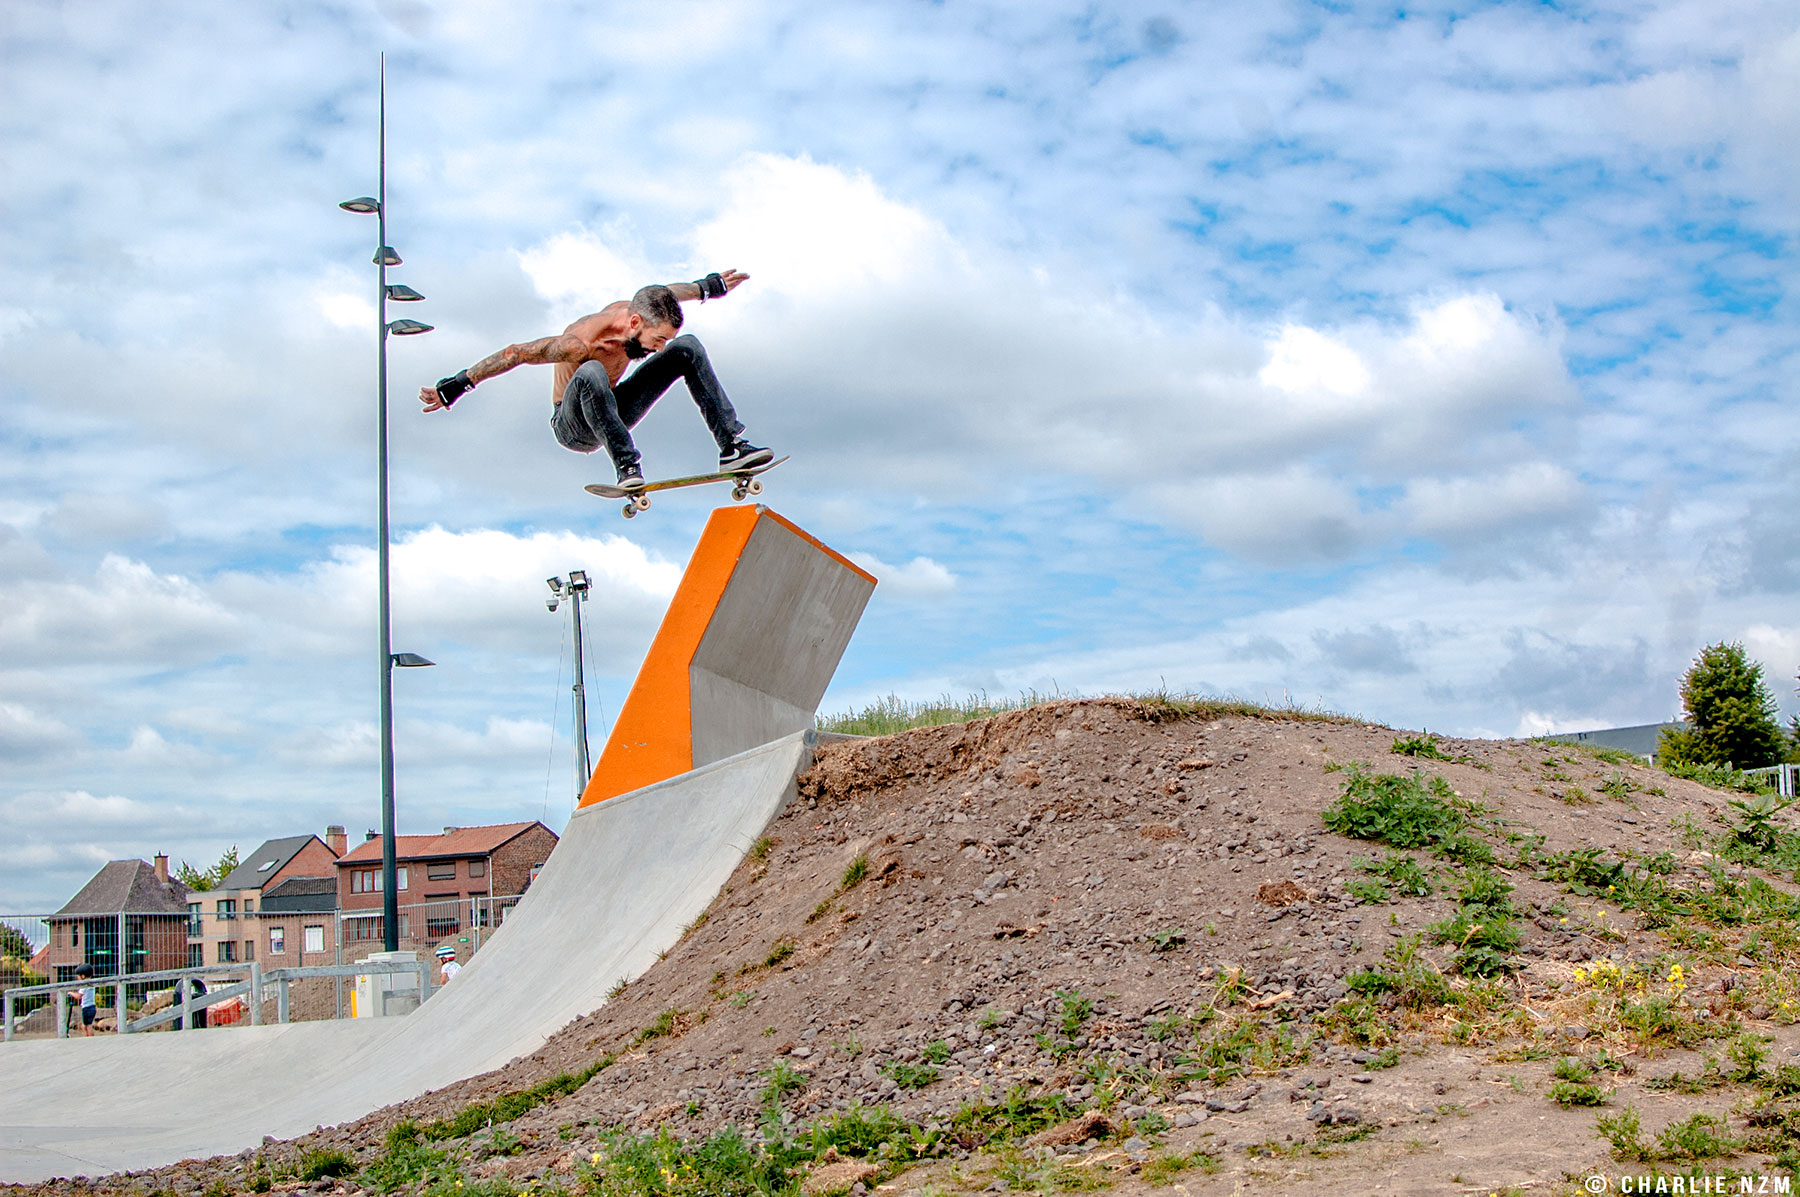 Air by Kenny Duquet at Skatepark Tongeren Photo by Charlie Van Lierde